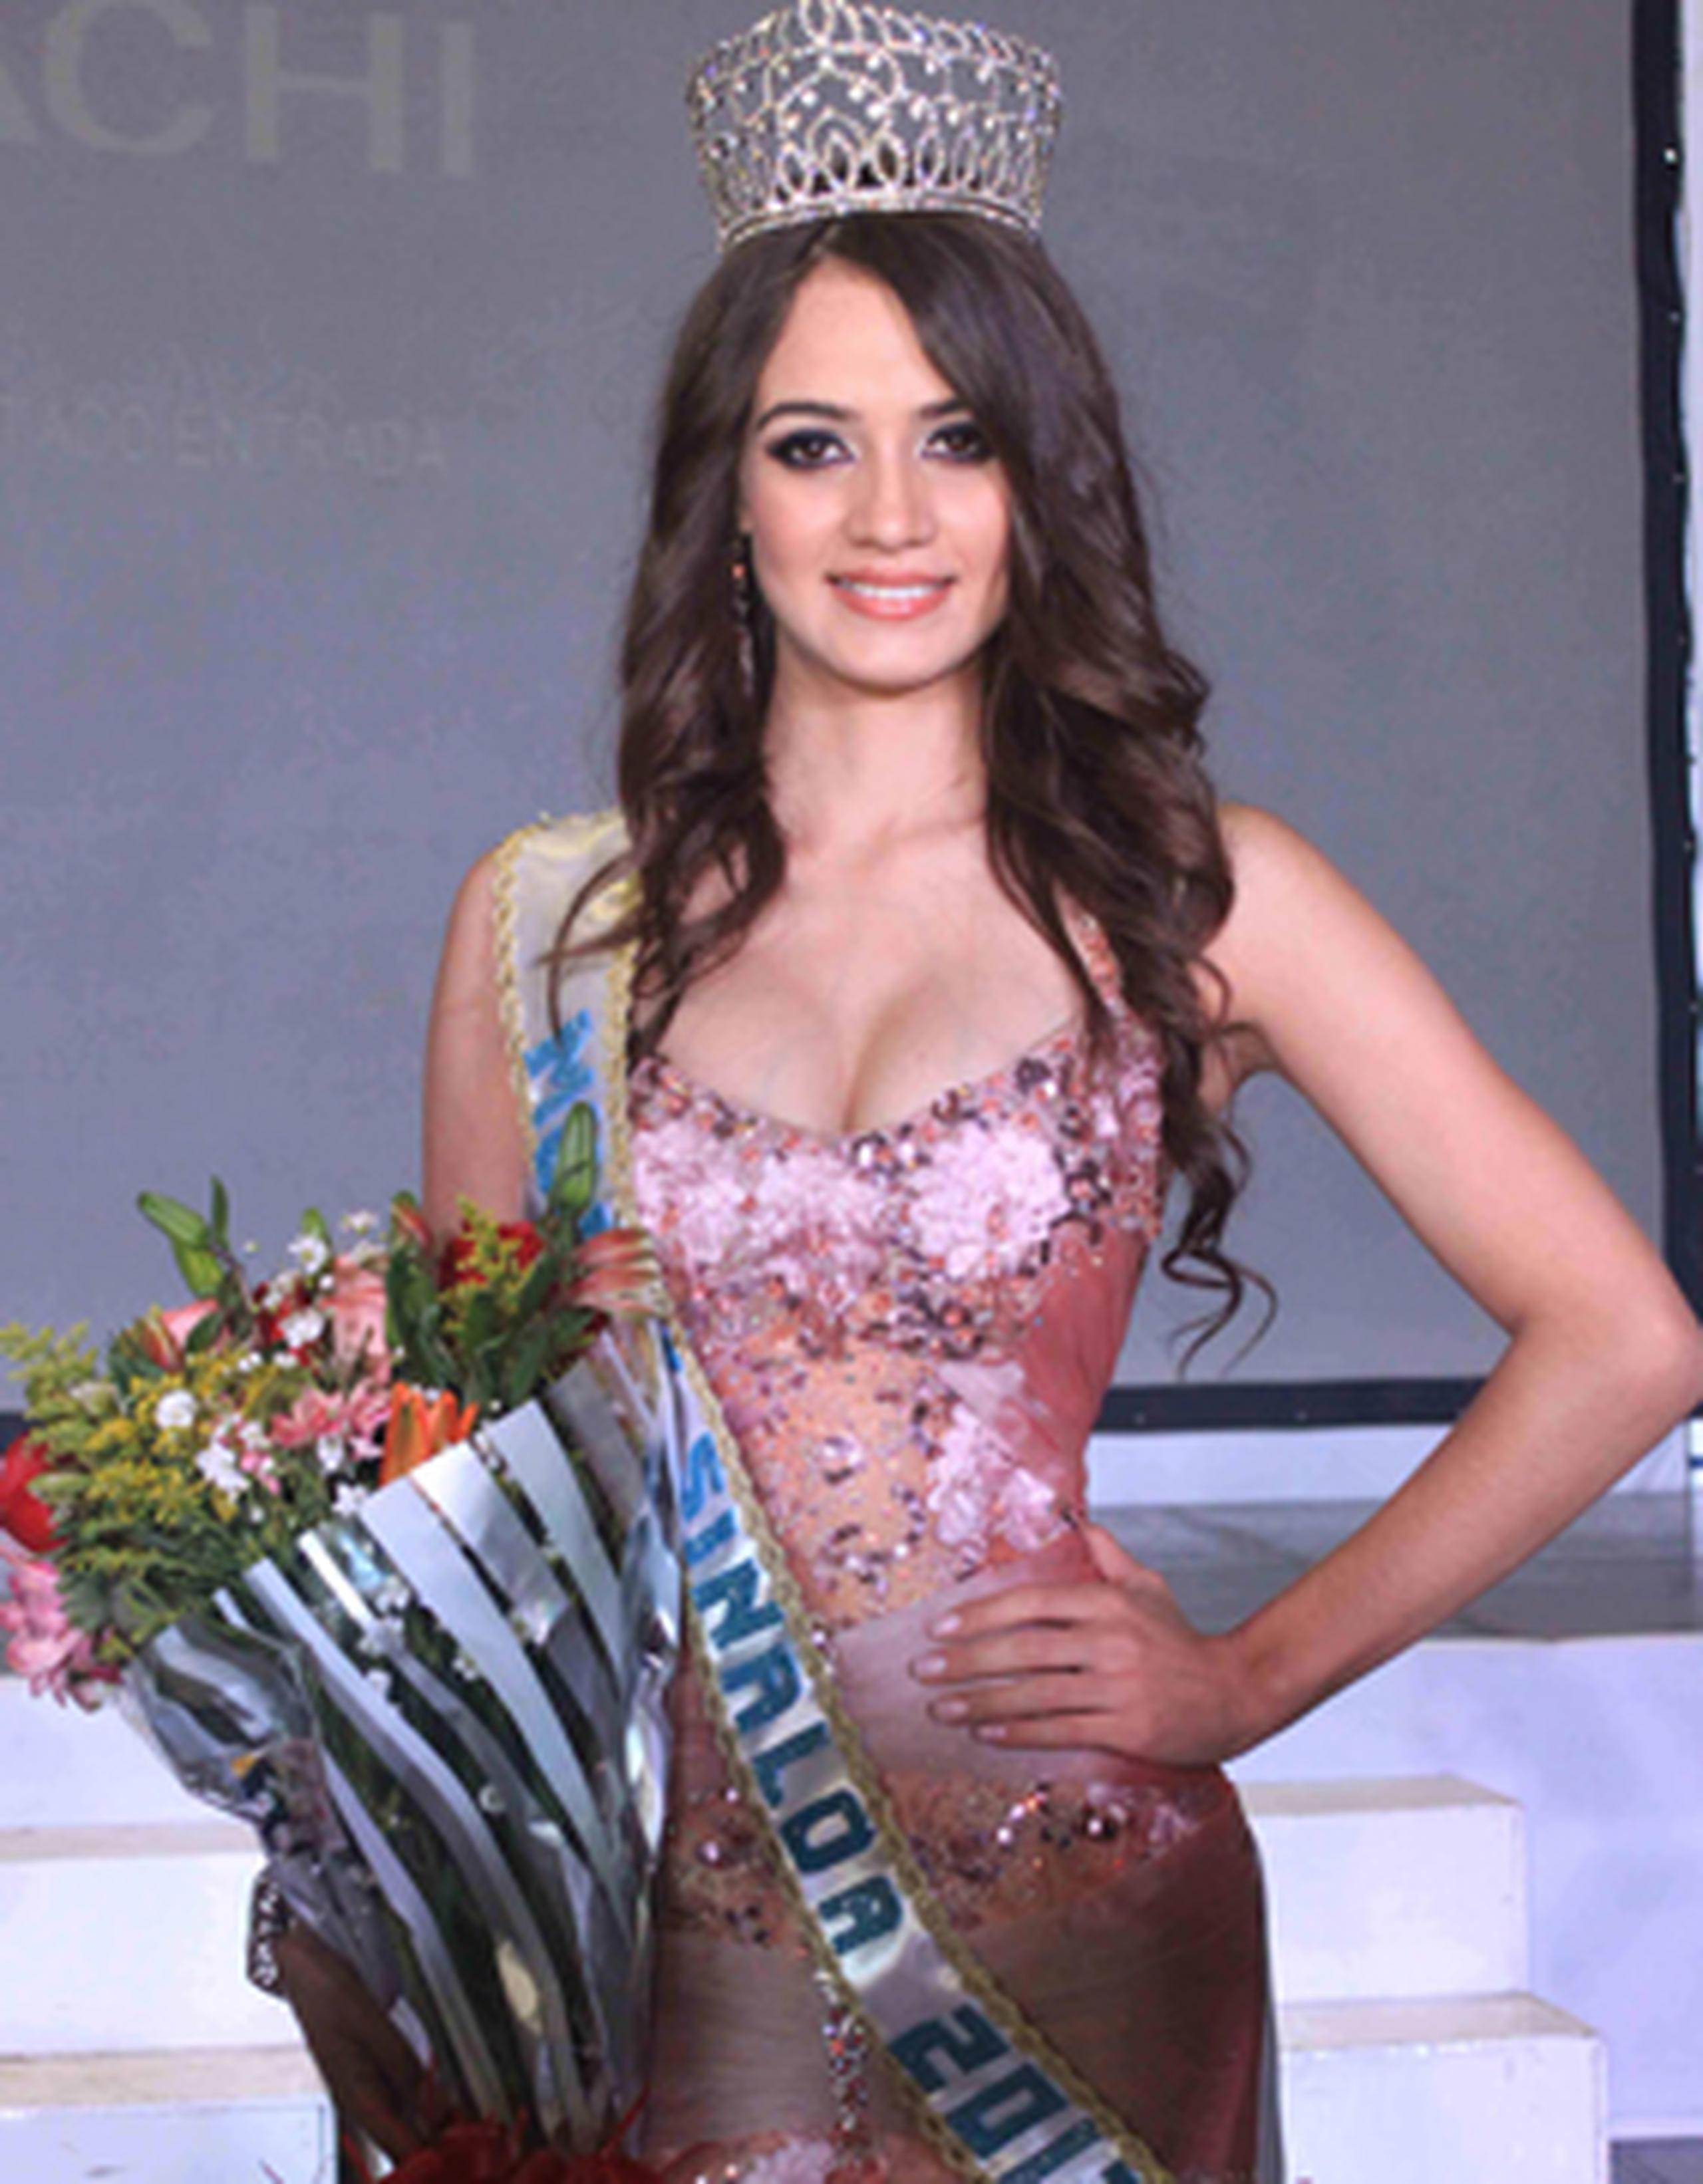 Flores fue ganadora del certamen Mujer Sinaloa 2012 en febrero. (AP)